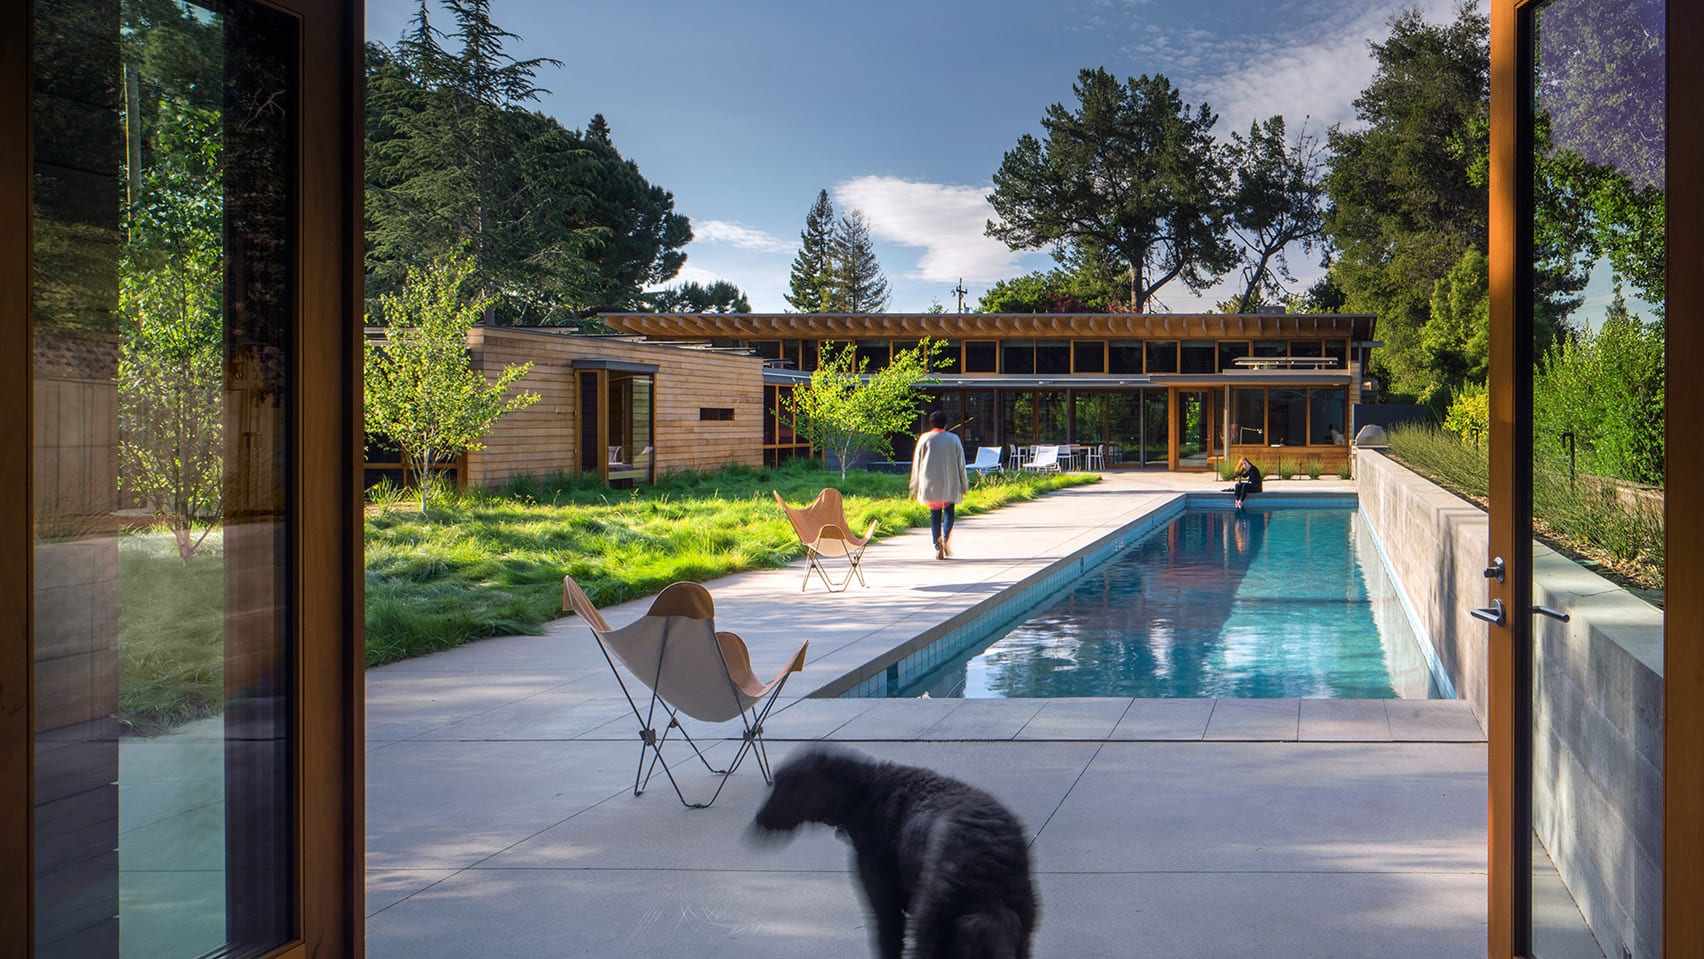 Los Altos Residence in Silicon Valley, California, by Bohlin Cywinski Jackson